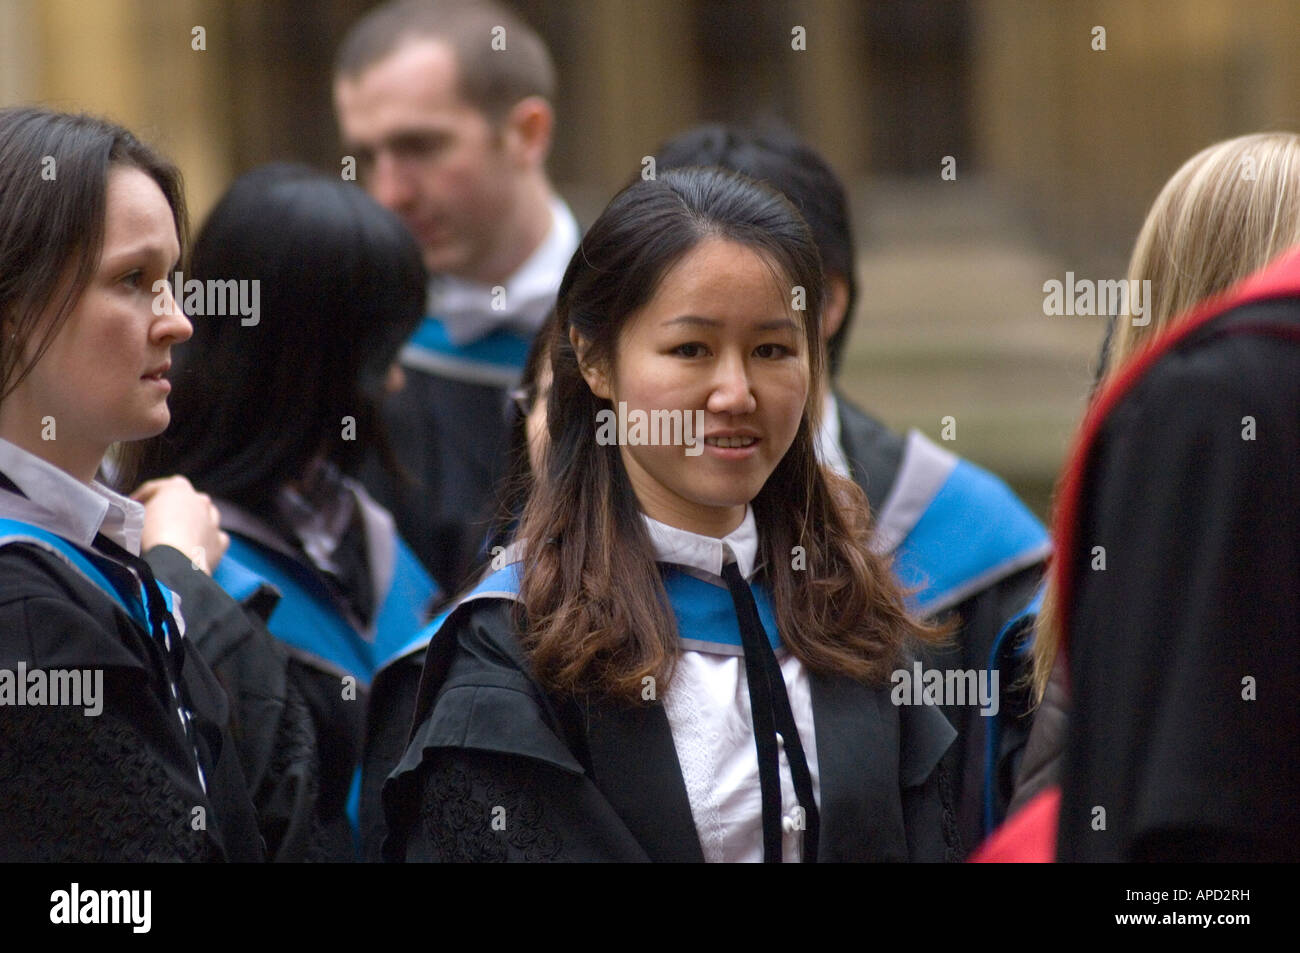 Feierlichen Abschluss in Oxford einen Moment zum Feiern und Reflexion, wenn Schüler ihren Abschluss erhalten Stockfoto